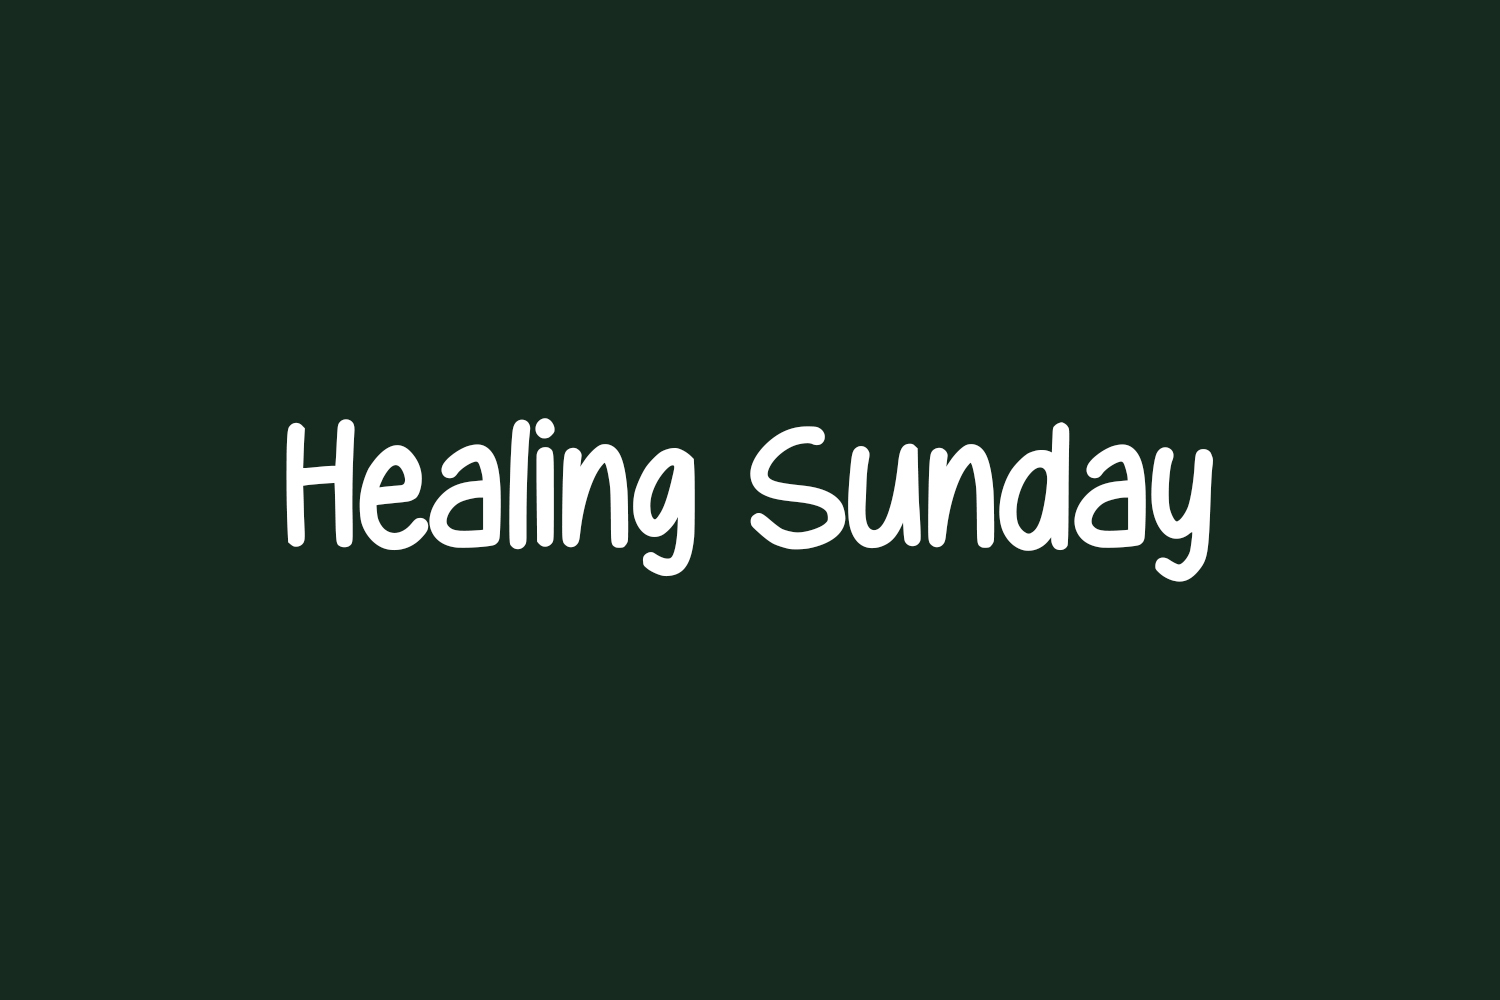 Healing Sunday Free Font